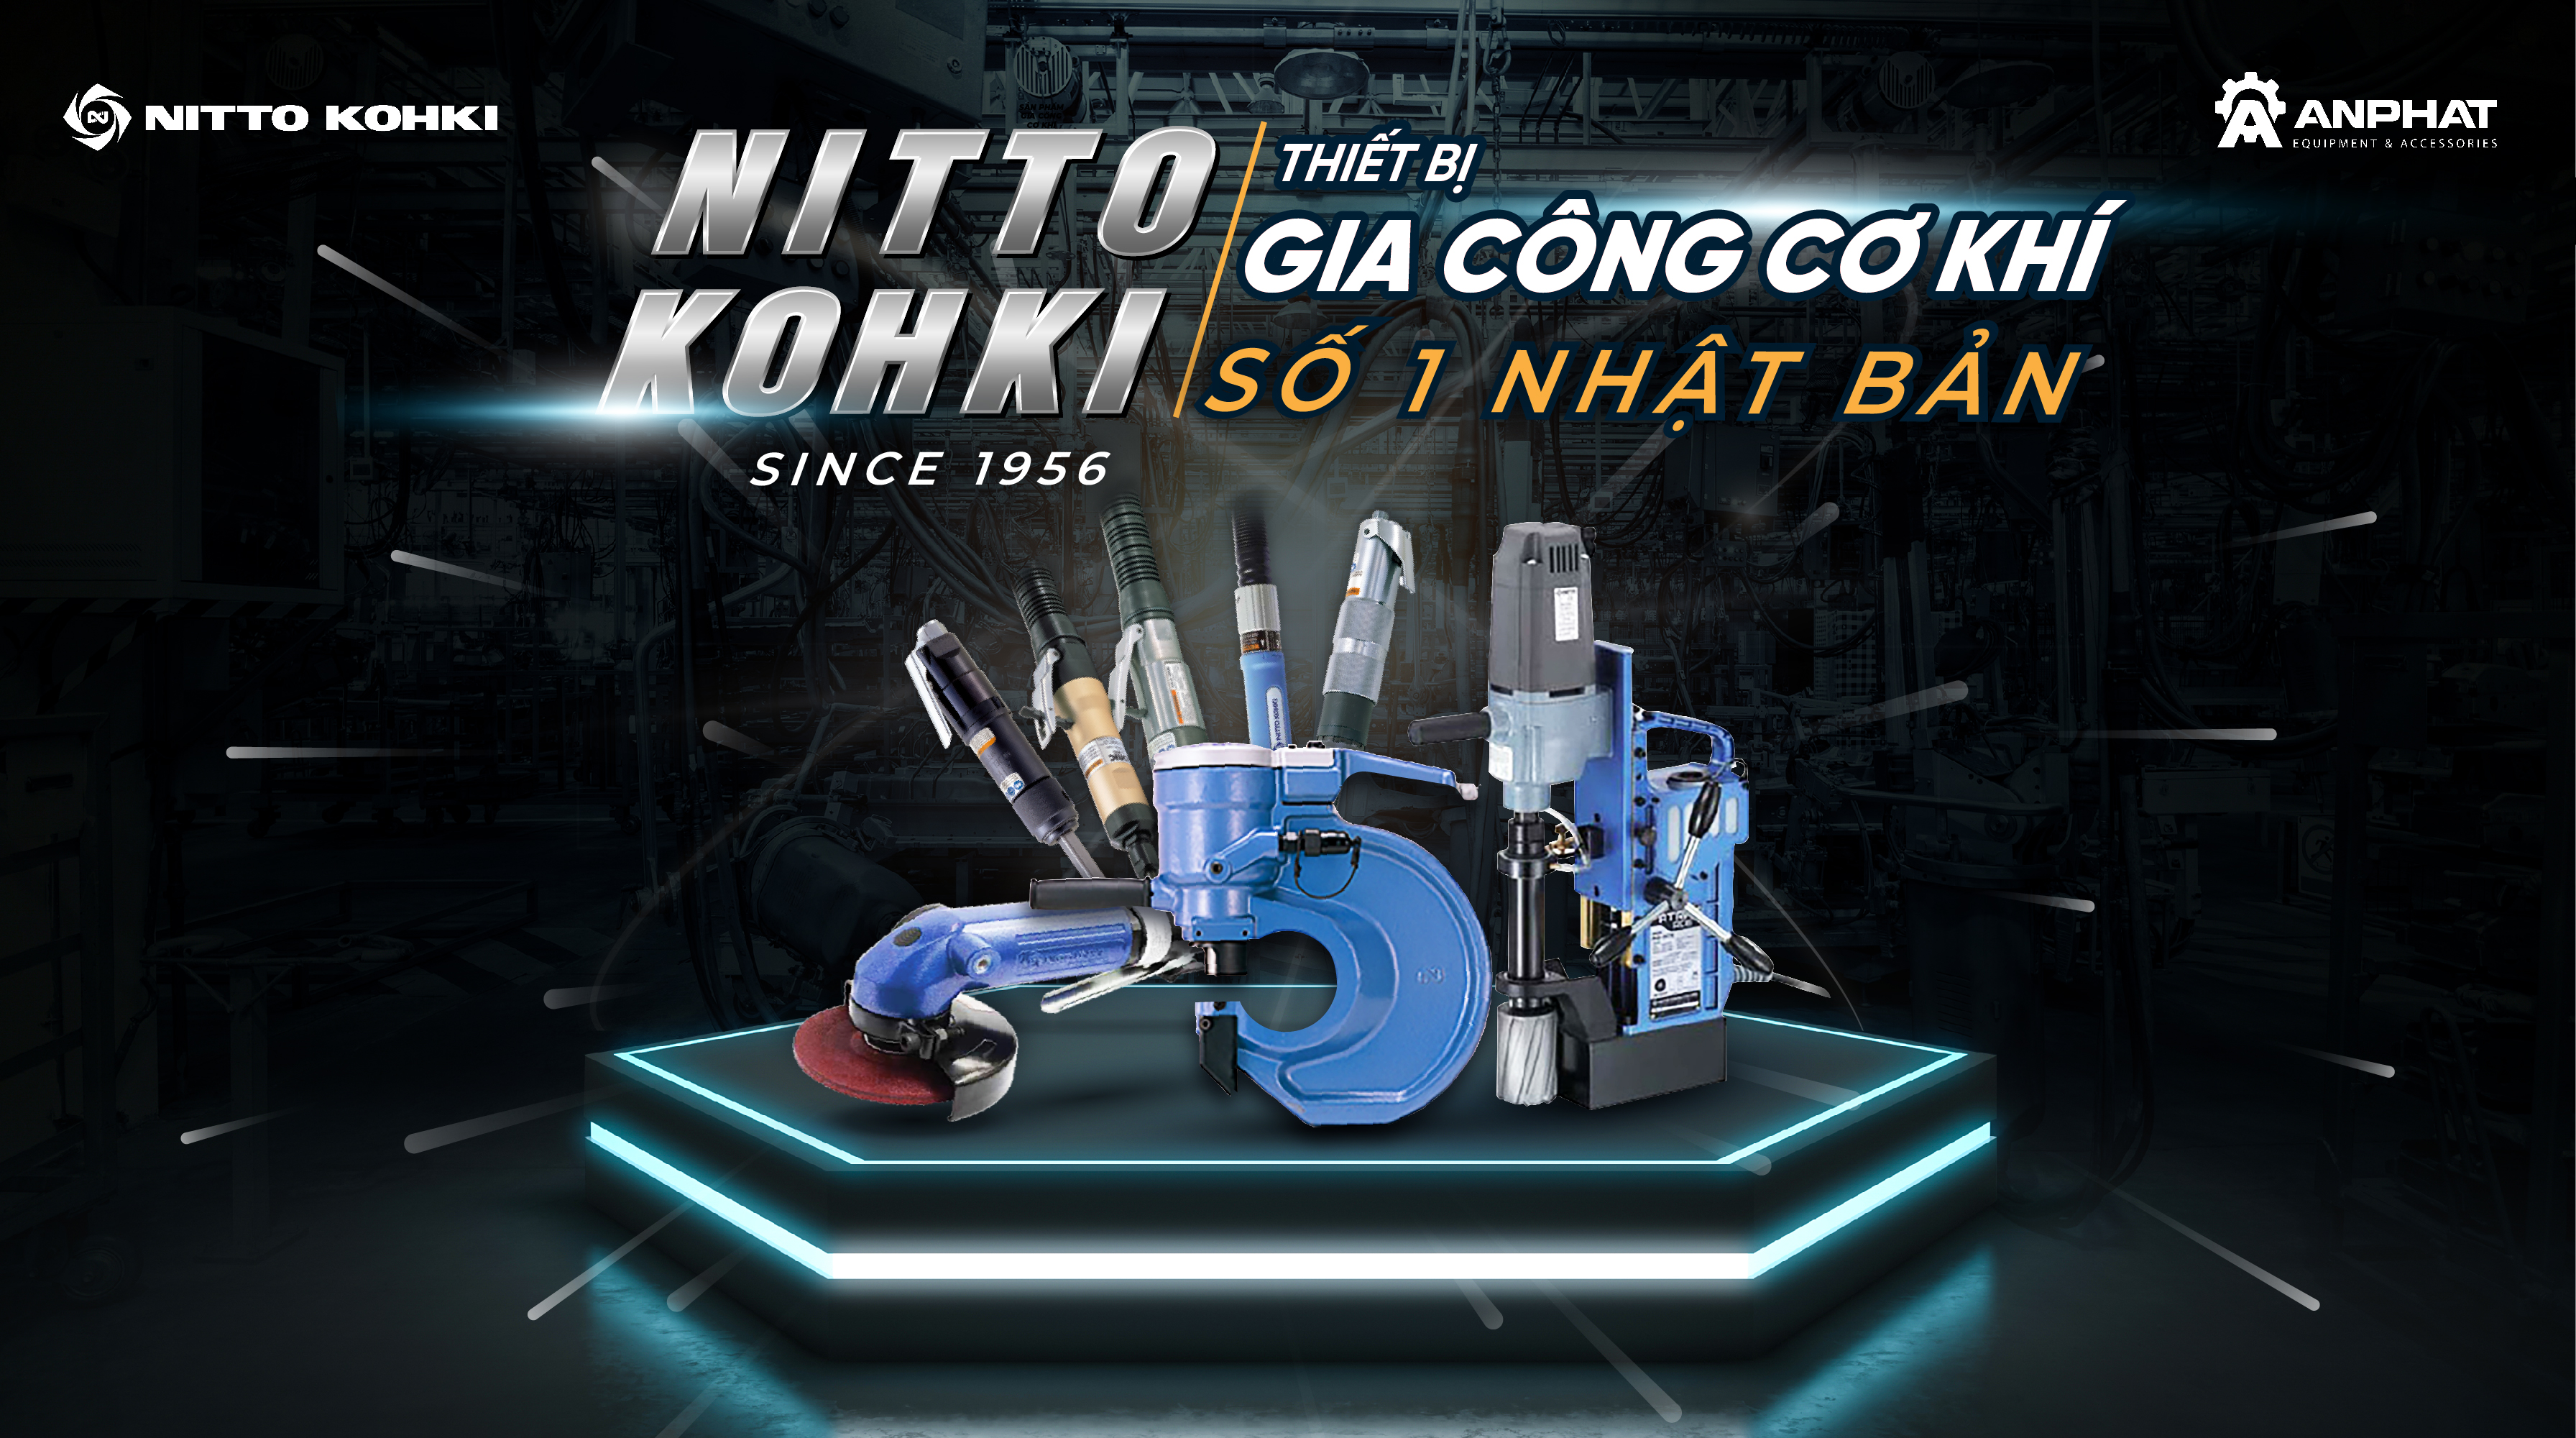 Power-machine-tools-Nitto-Kohki